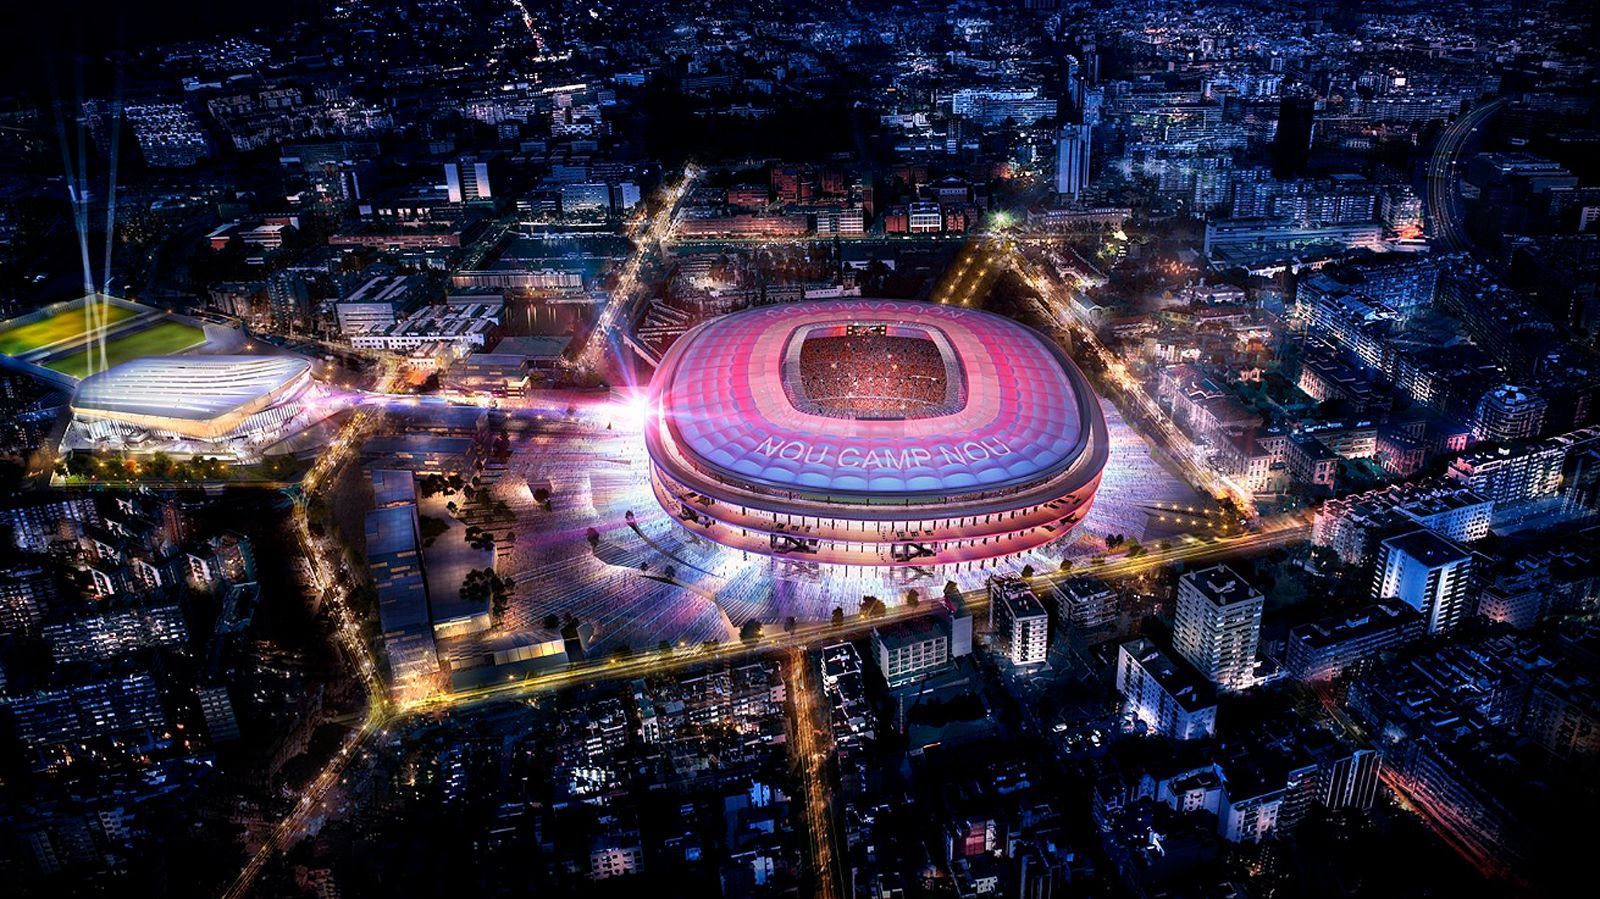 
                <strong>FC Barcelona</strong><br>
                Der spanische Meister FC Barcelona ist drauf und dran, seine Heimstätte zu erneuern. 360 Millionen Euro investieren die Katalanen laut Medienberichten in die Neugestaltung des Camp Nou, das dann 105.000 Zuschauern Platz bieten wird. Als besondere Neuheit sollen die Fans durch eine Media-Wall noch mehr eingebunden werden. Die Fertigstellung ist für die Saison 2022/23 vorgesehen. Im Rahmen des sogenannten Projekts "Espai Barca" wird aber auch im Umfeld des Stadions vieles neu gebaut bzw. umgebaut - etwa eine Eislaufhalle sowie weitere Spielfelder für die Jugendteams.
              